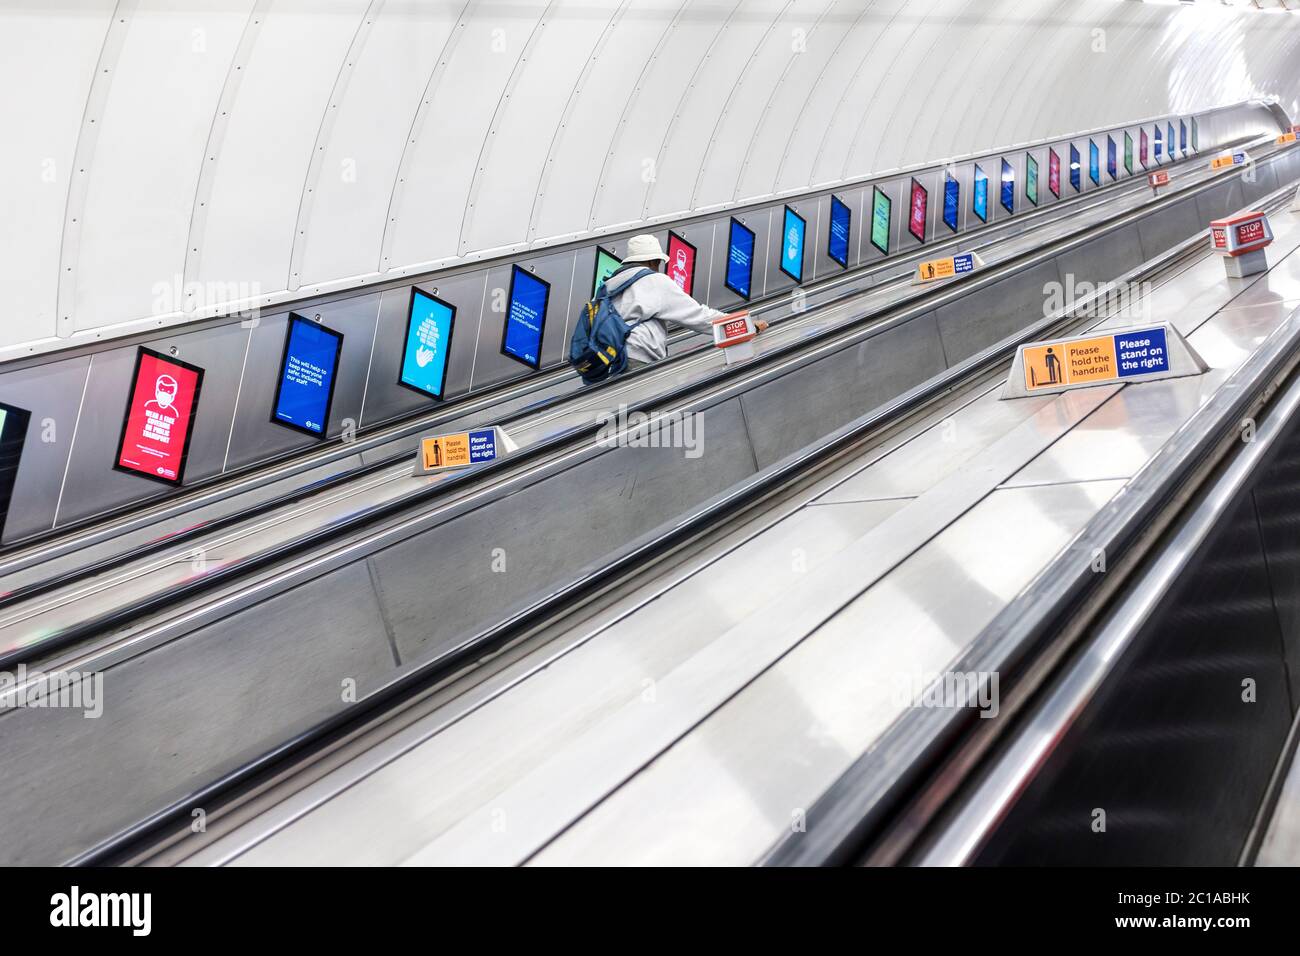 Covid 19 escalators désertés à la station de métro London Leicester Square. Londres, Angleterre Banque D'Images